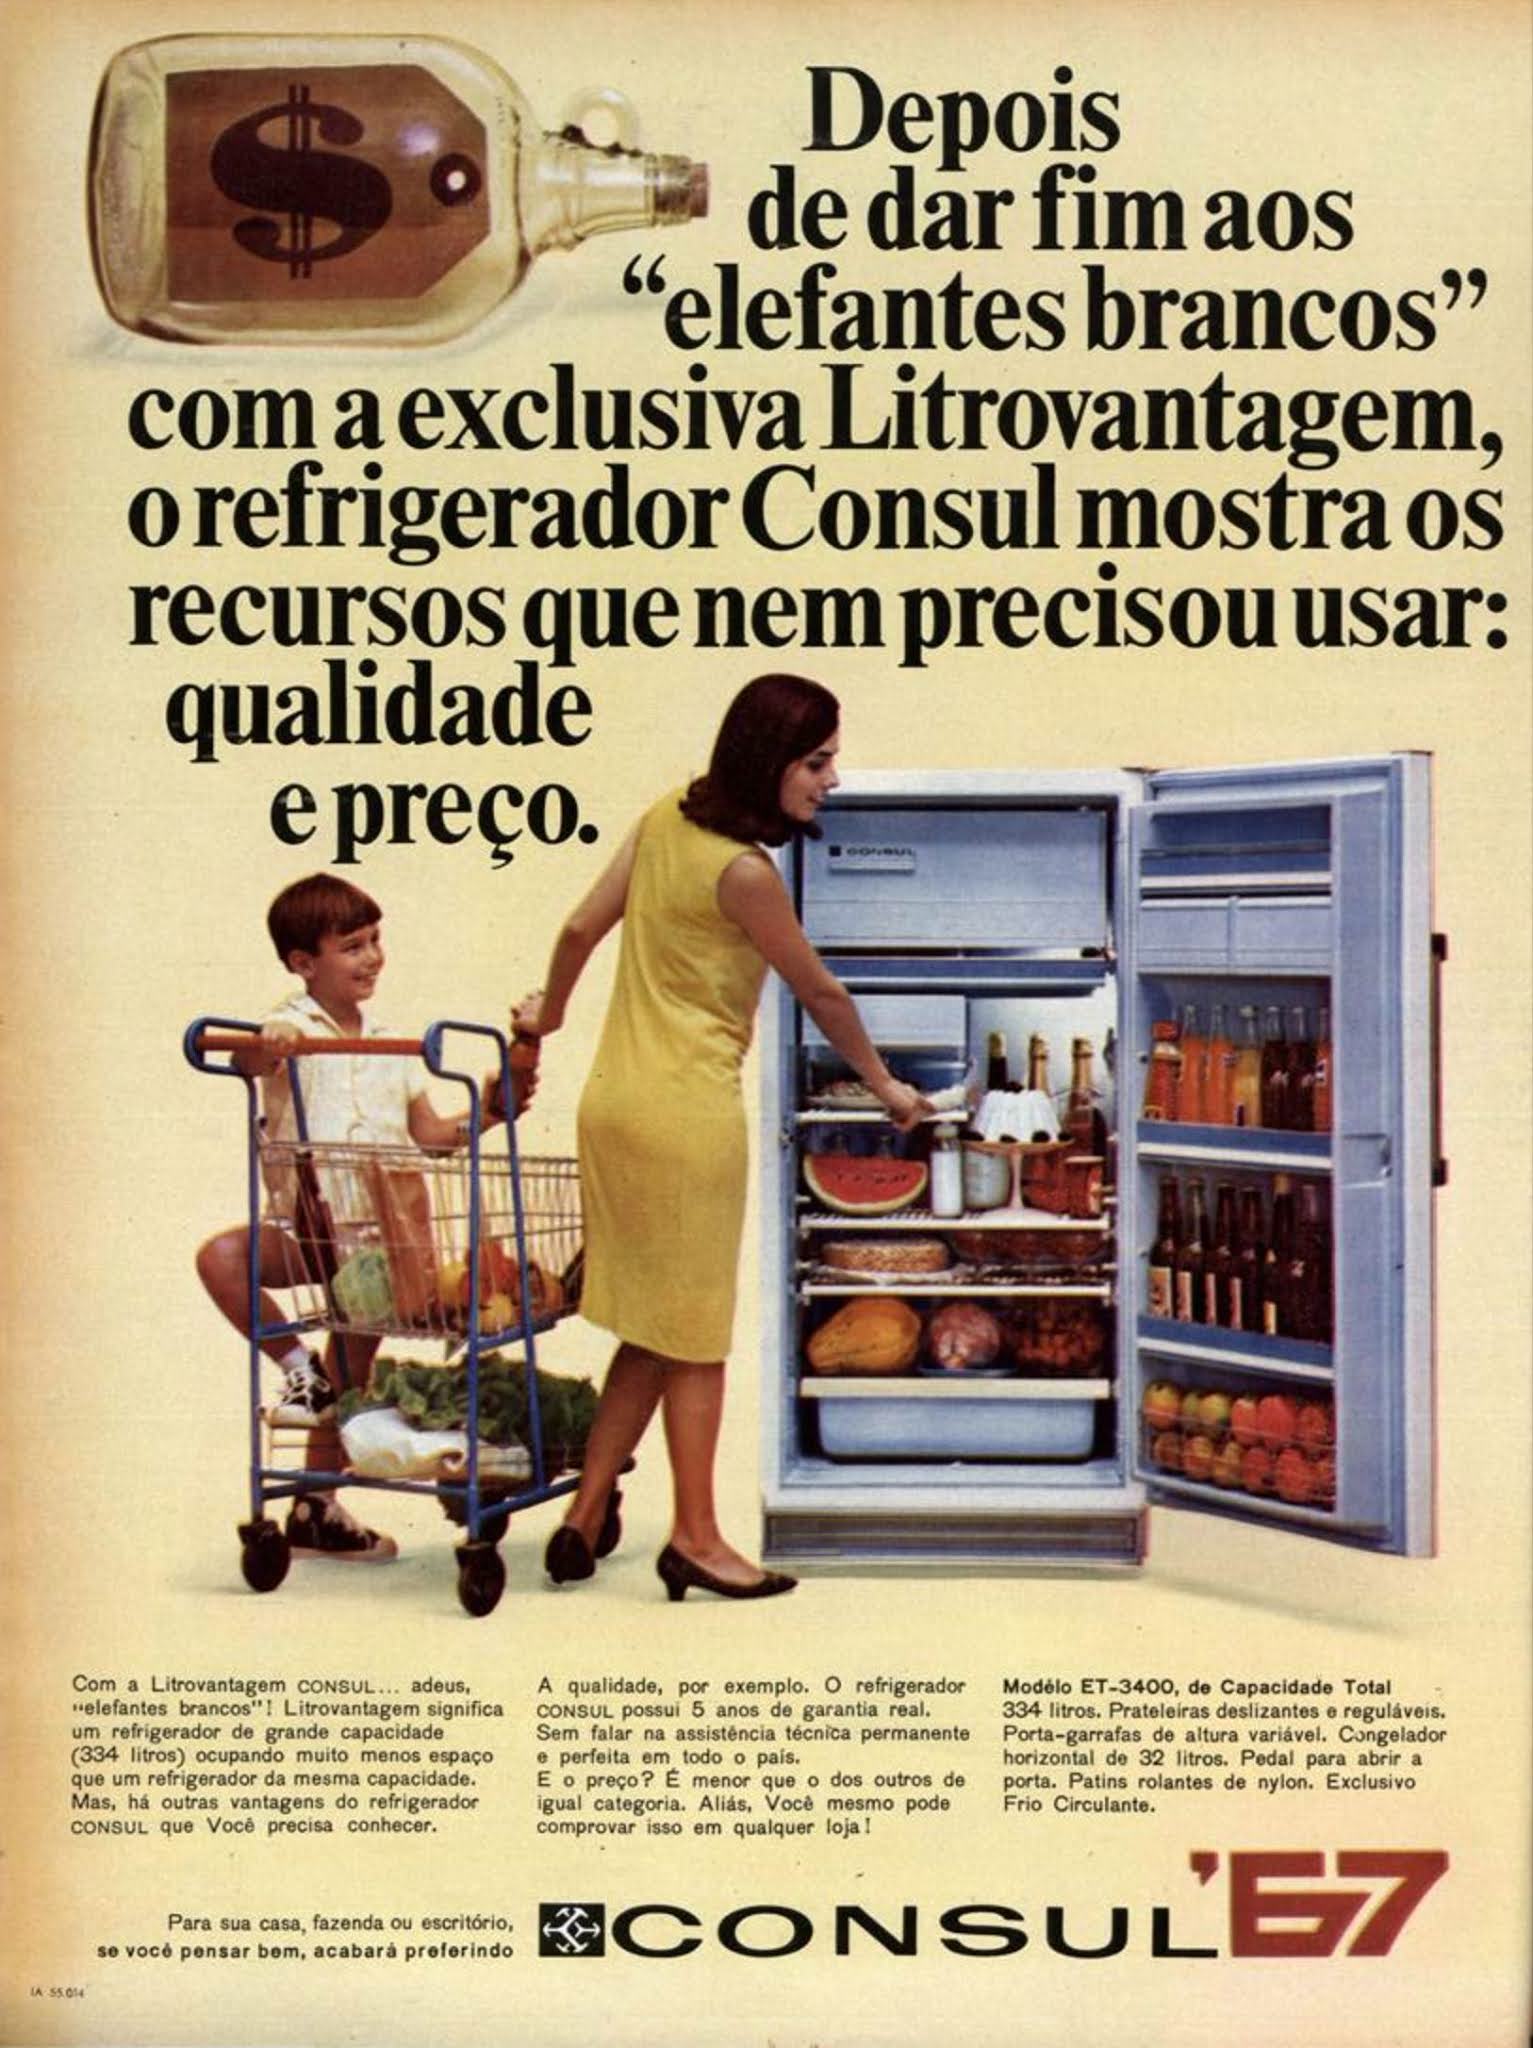 Anúncio antigo do Refrigerador Consul veiculado em 1967